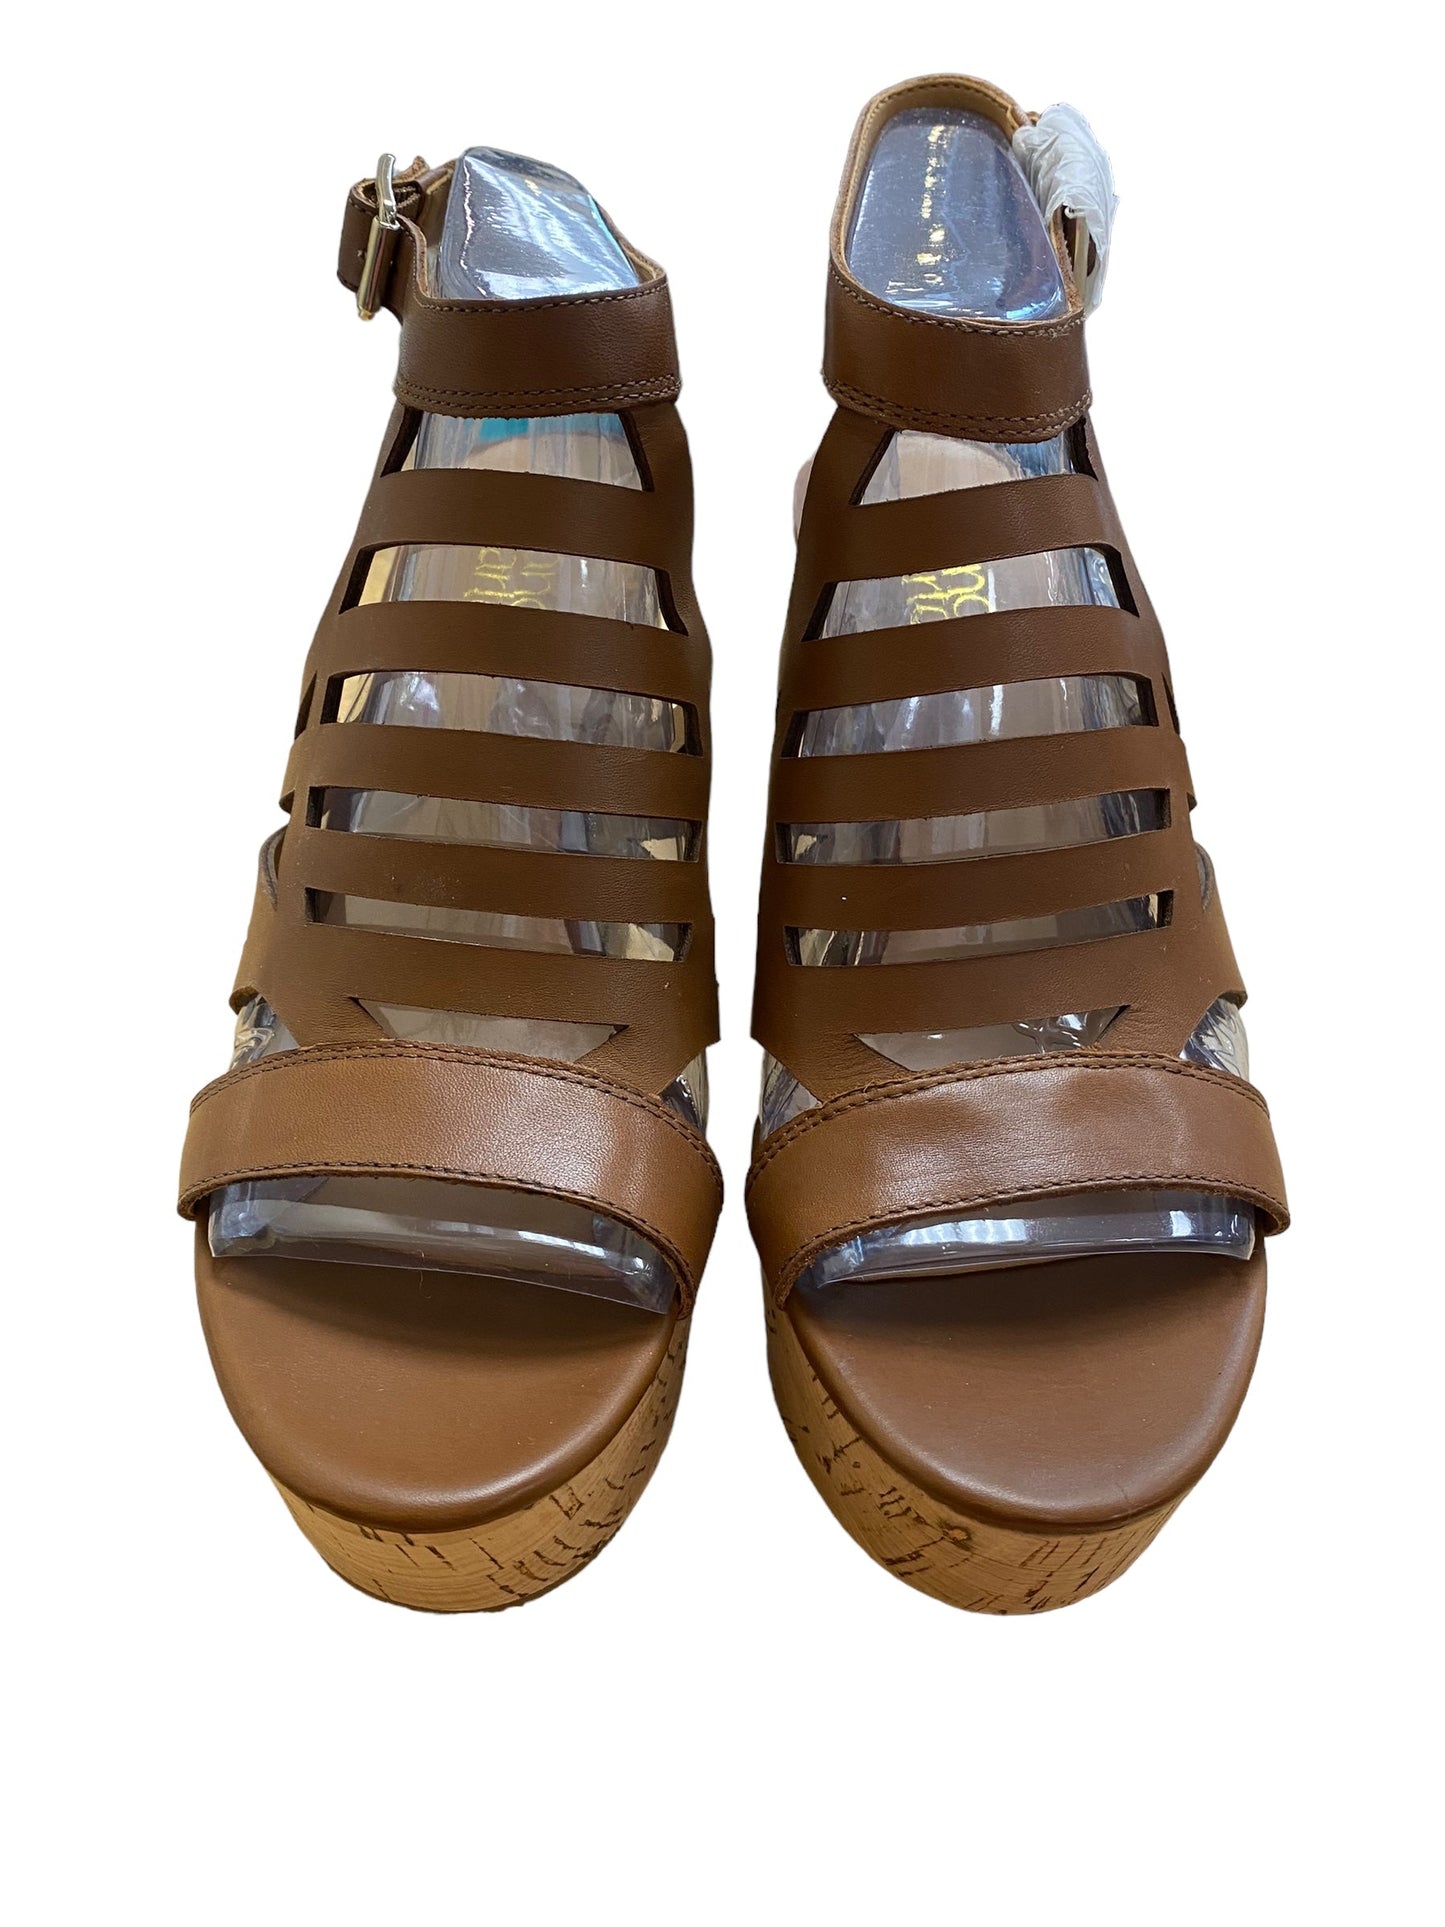 Brown Shoes Heels Block Franco Sarto, Size 7